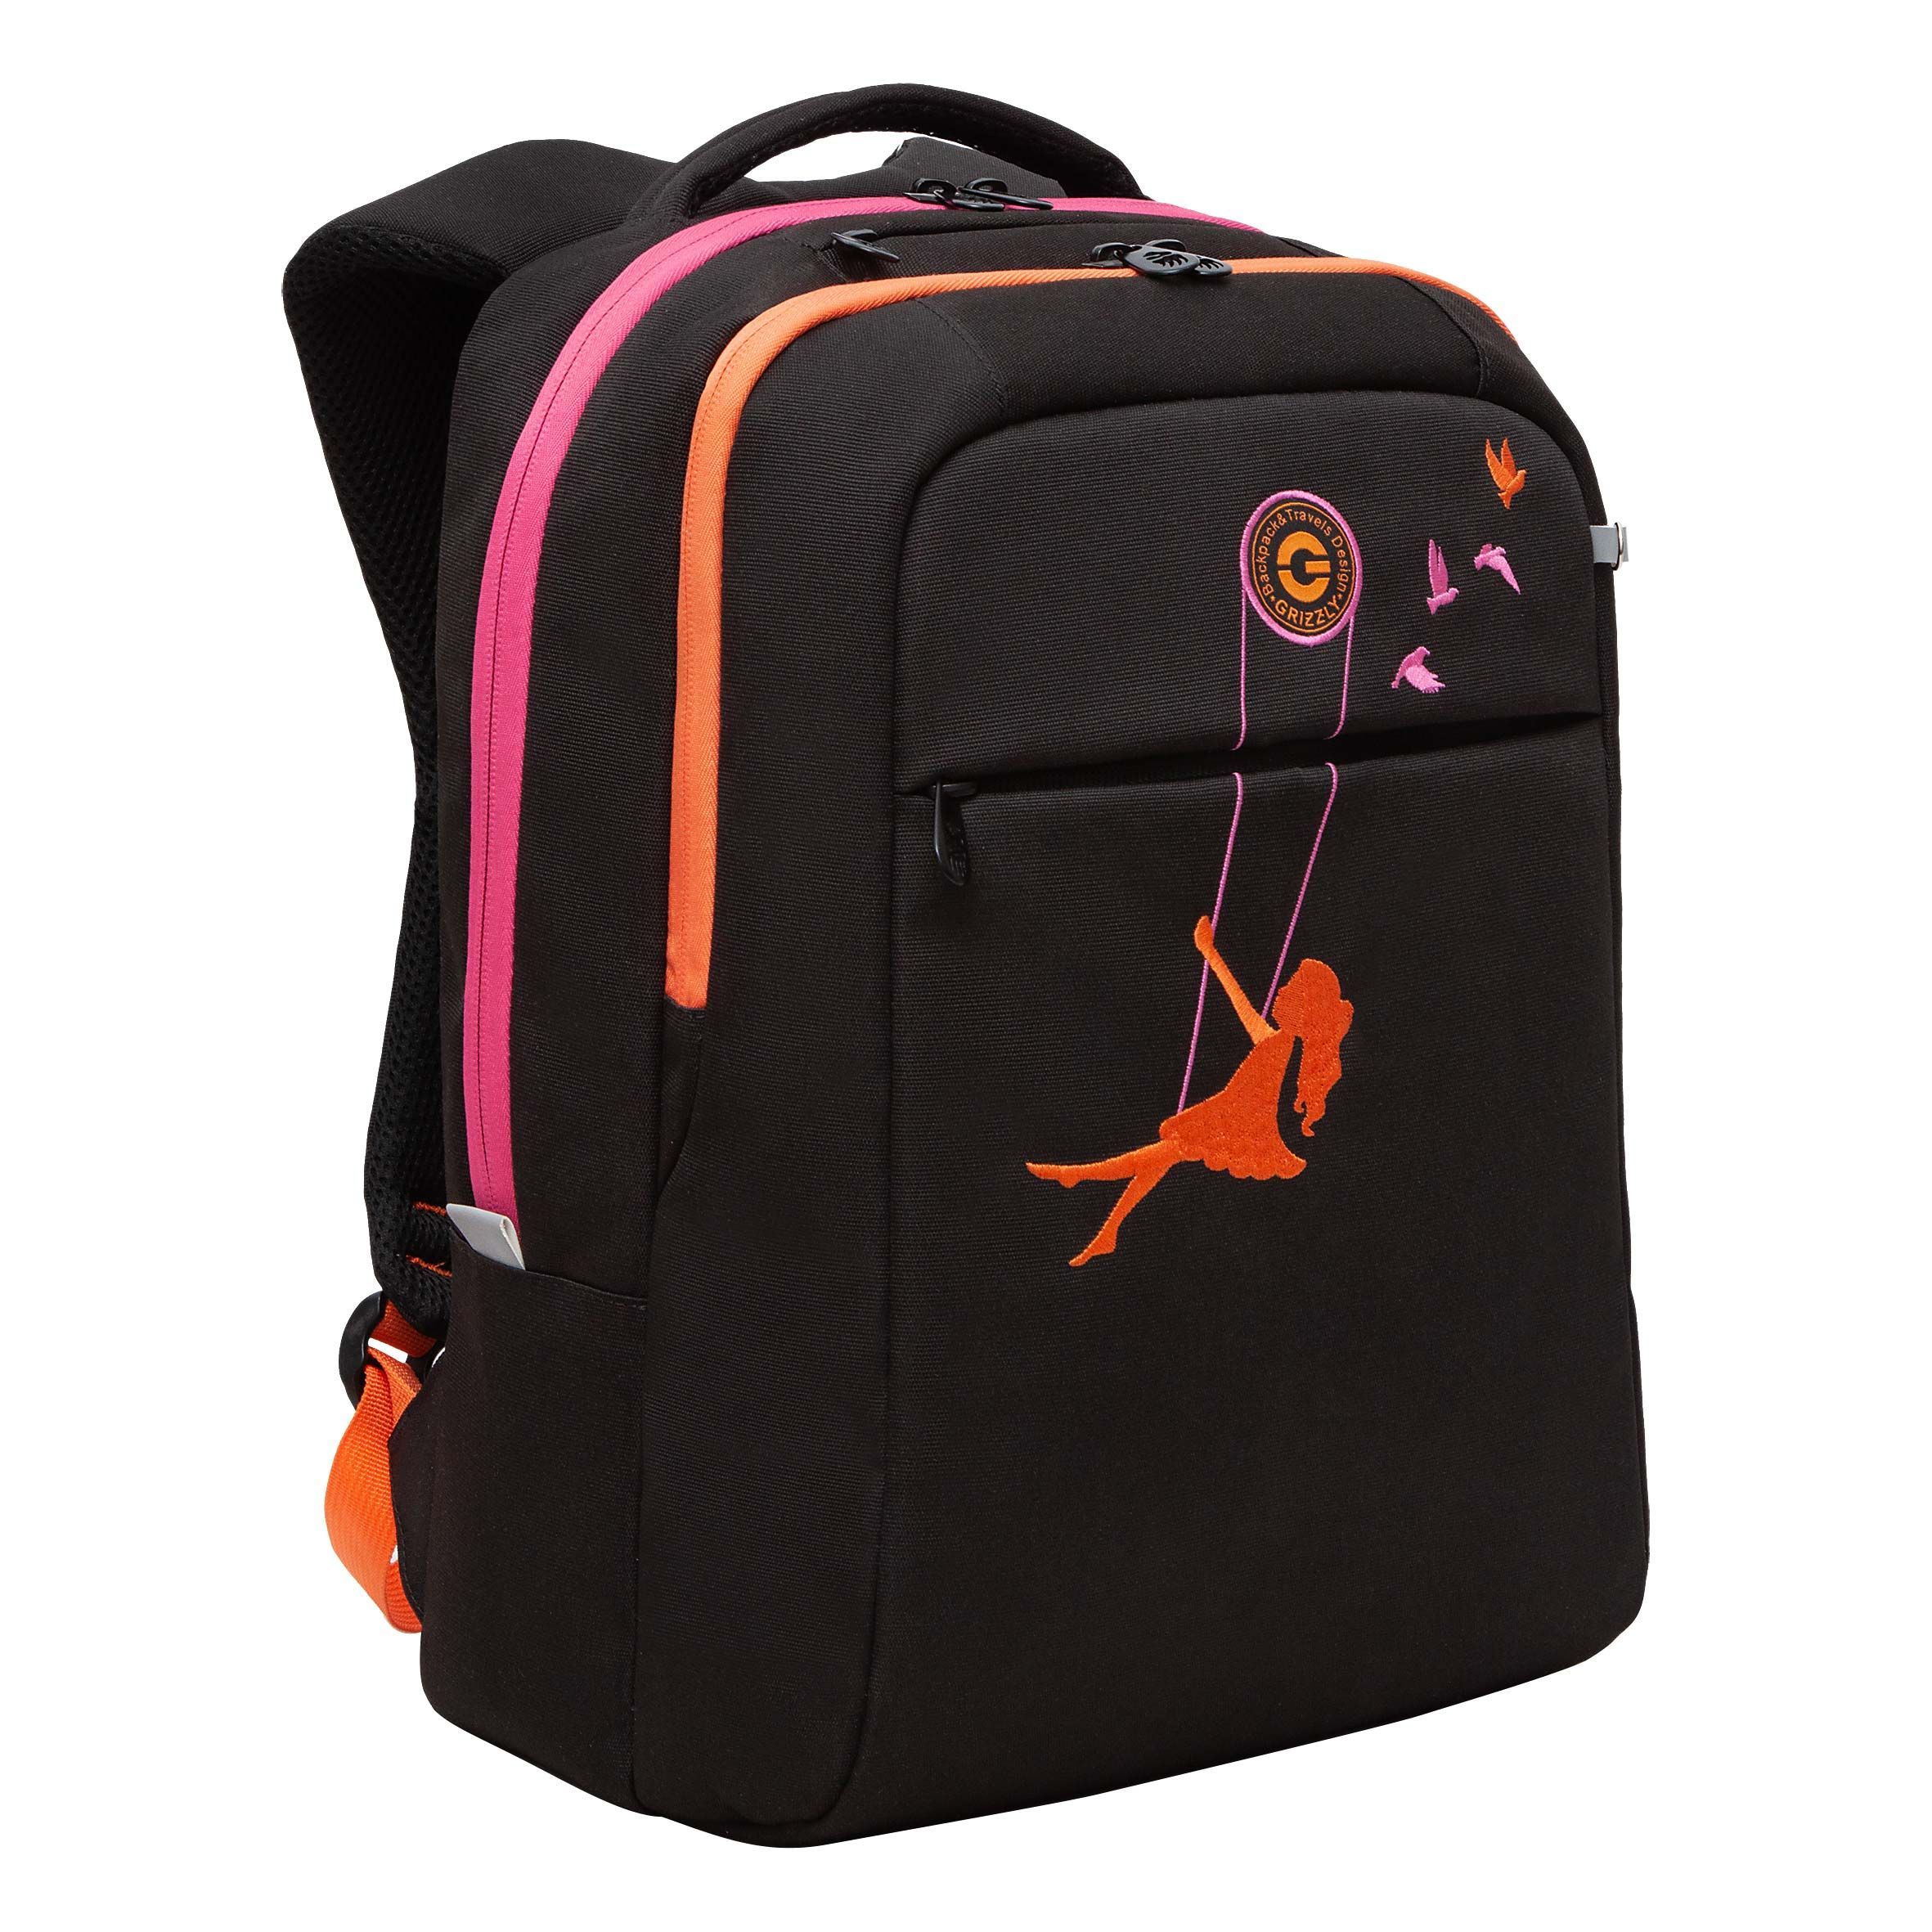 Рюкзак GRIZZLY RD-344-2 молодежный на каждый день вместительный черный-оранжевый рюкзак молодежный из текстиля на молнии наружный карман оранжевый